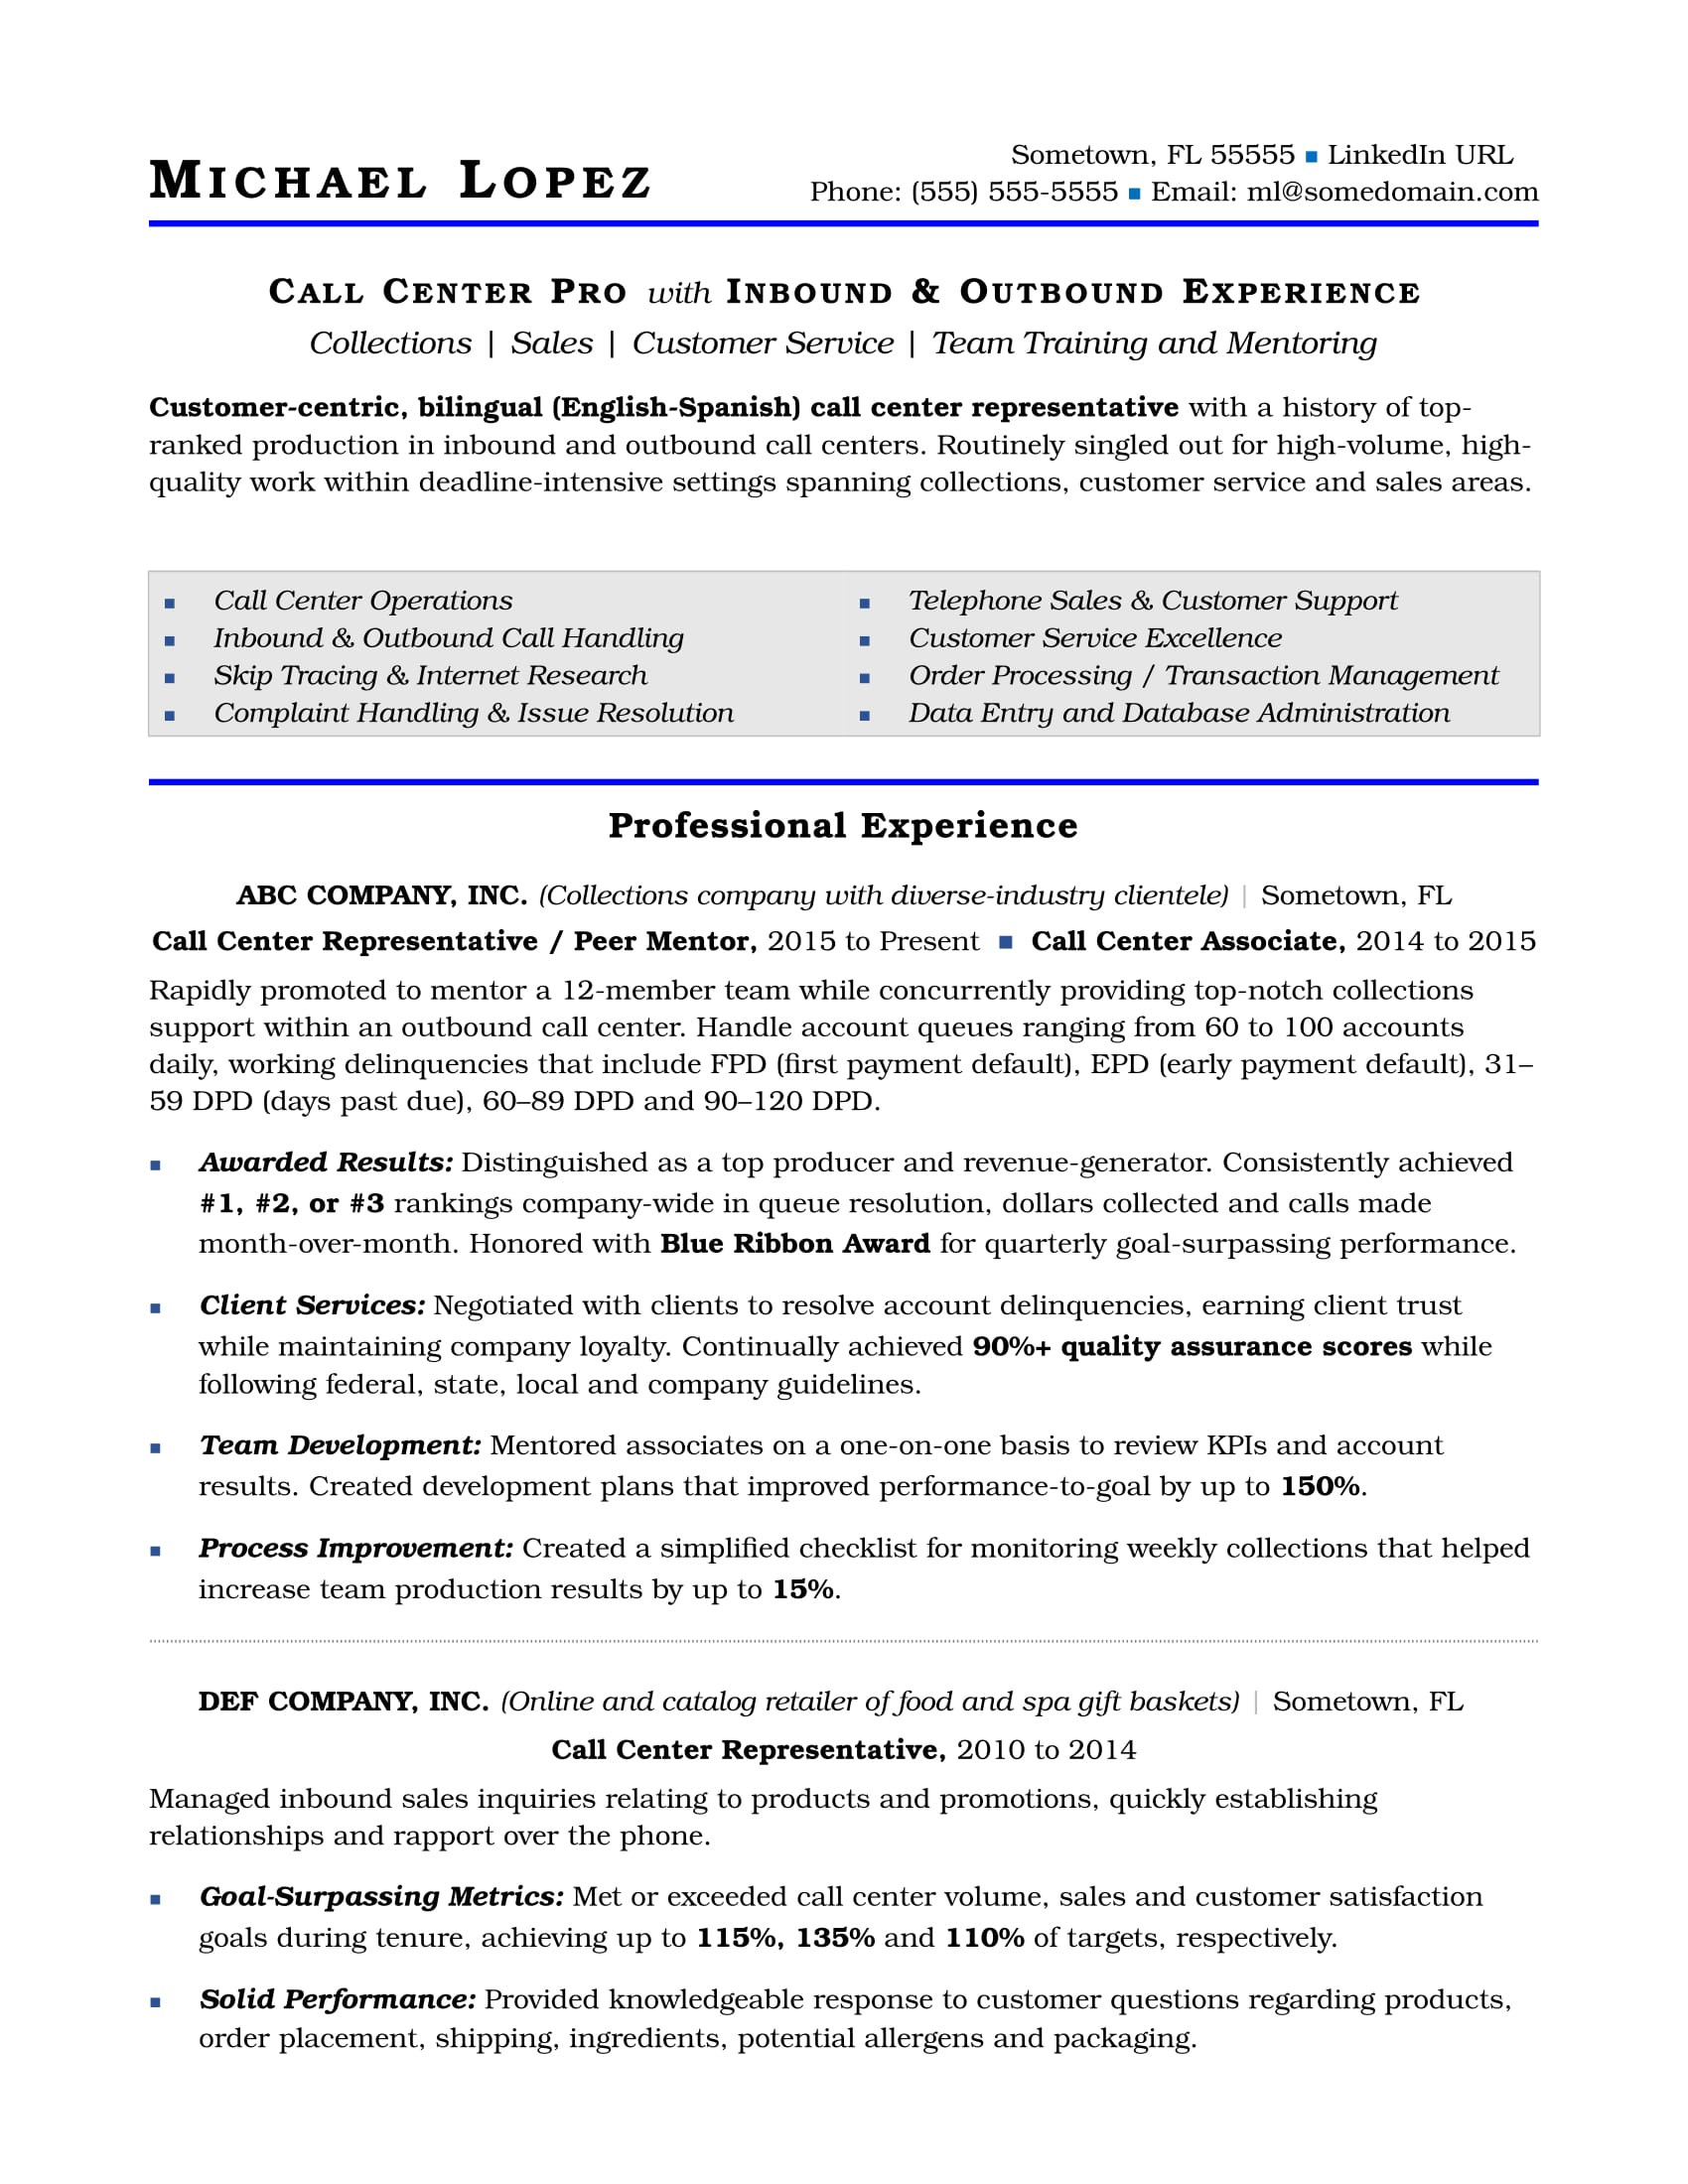 Resume Samples for Call Center Representative Call Center Resume Sample Monster.com